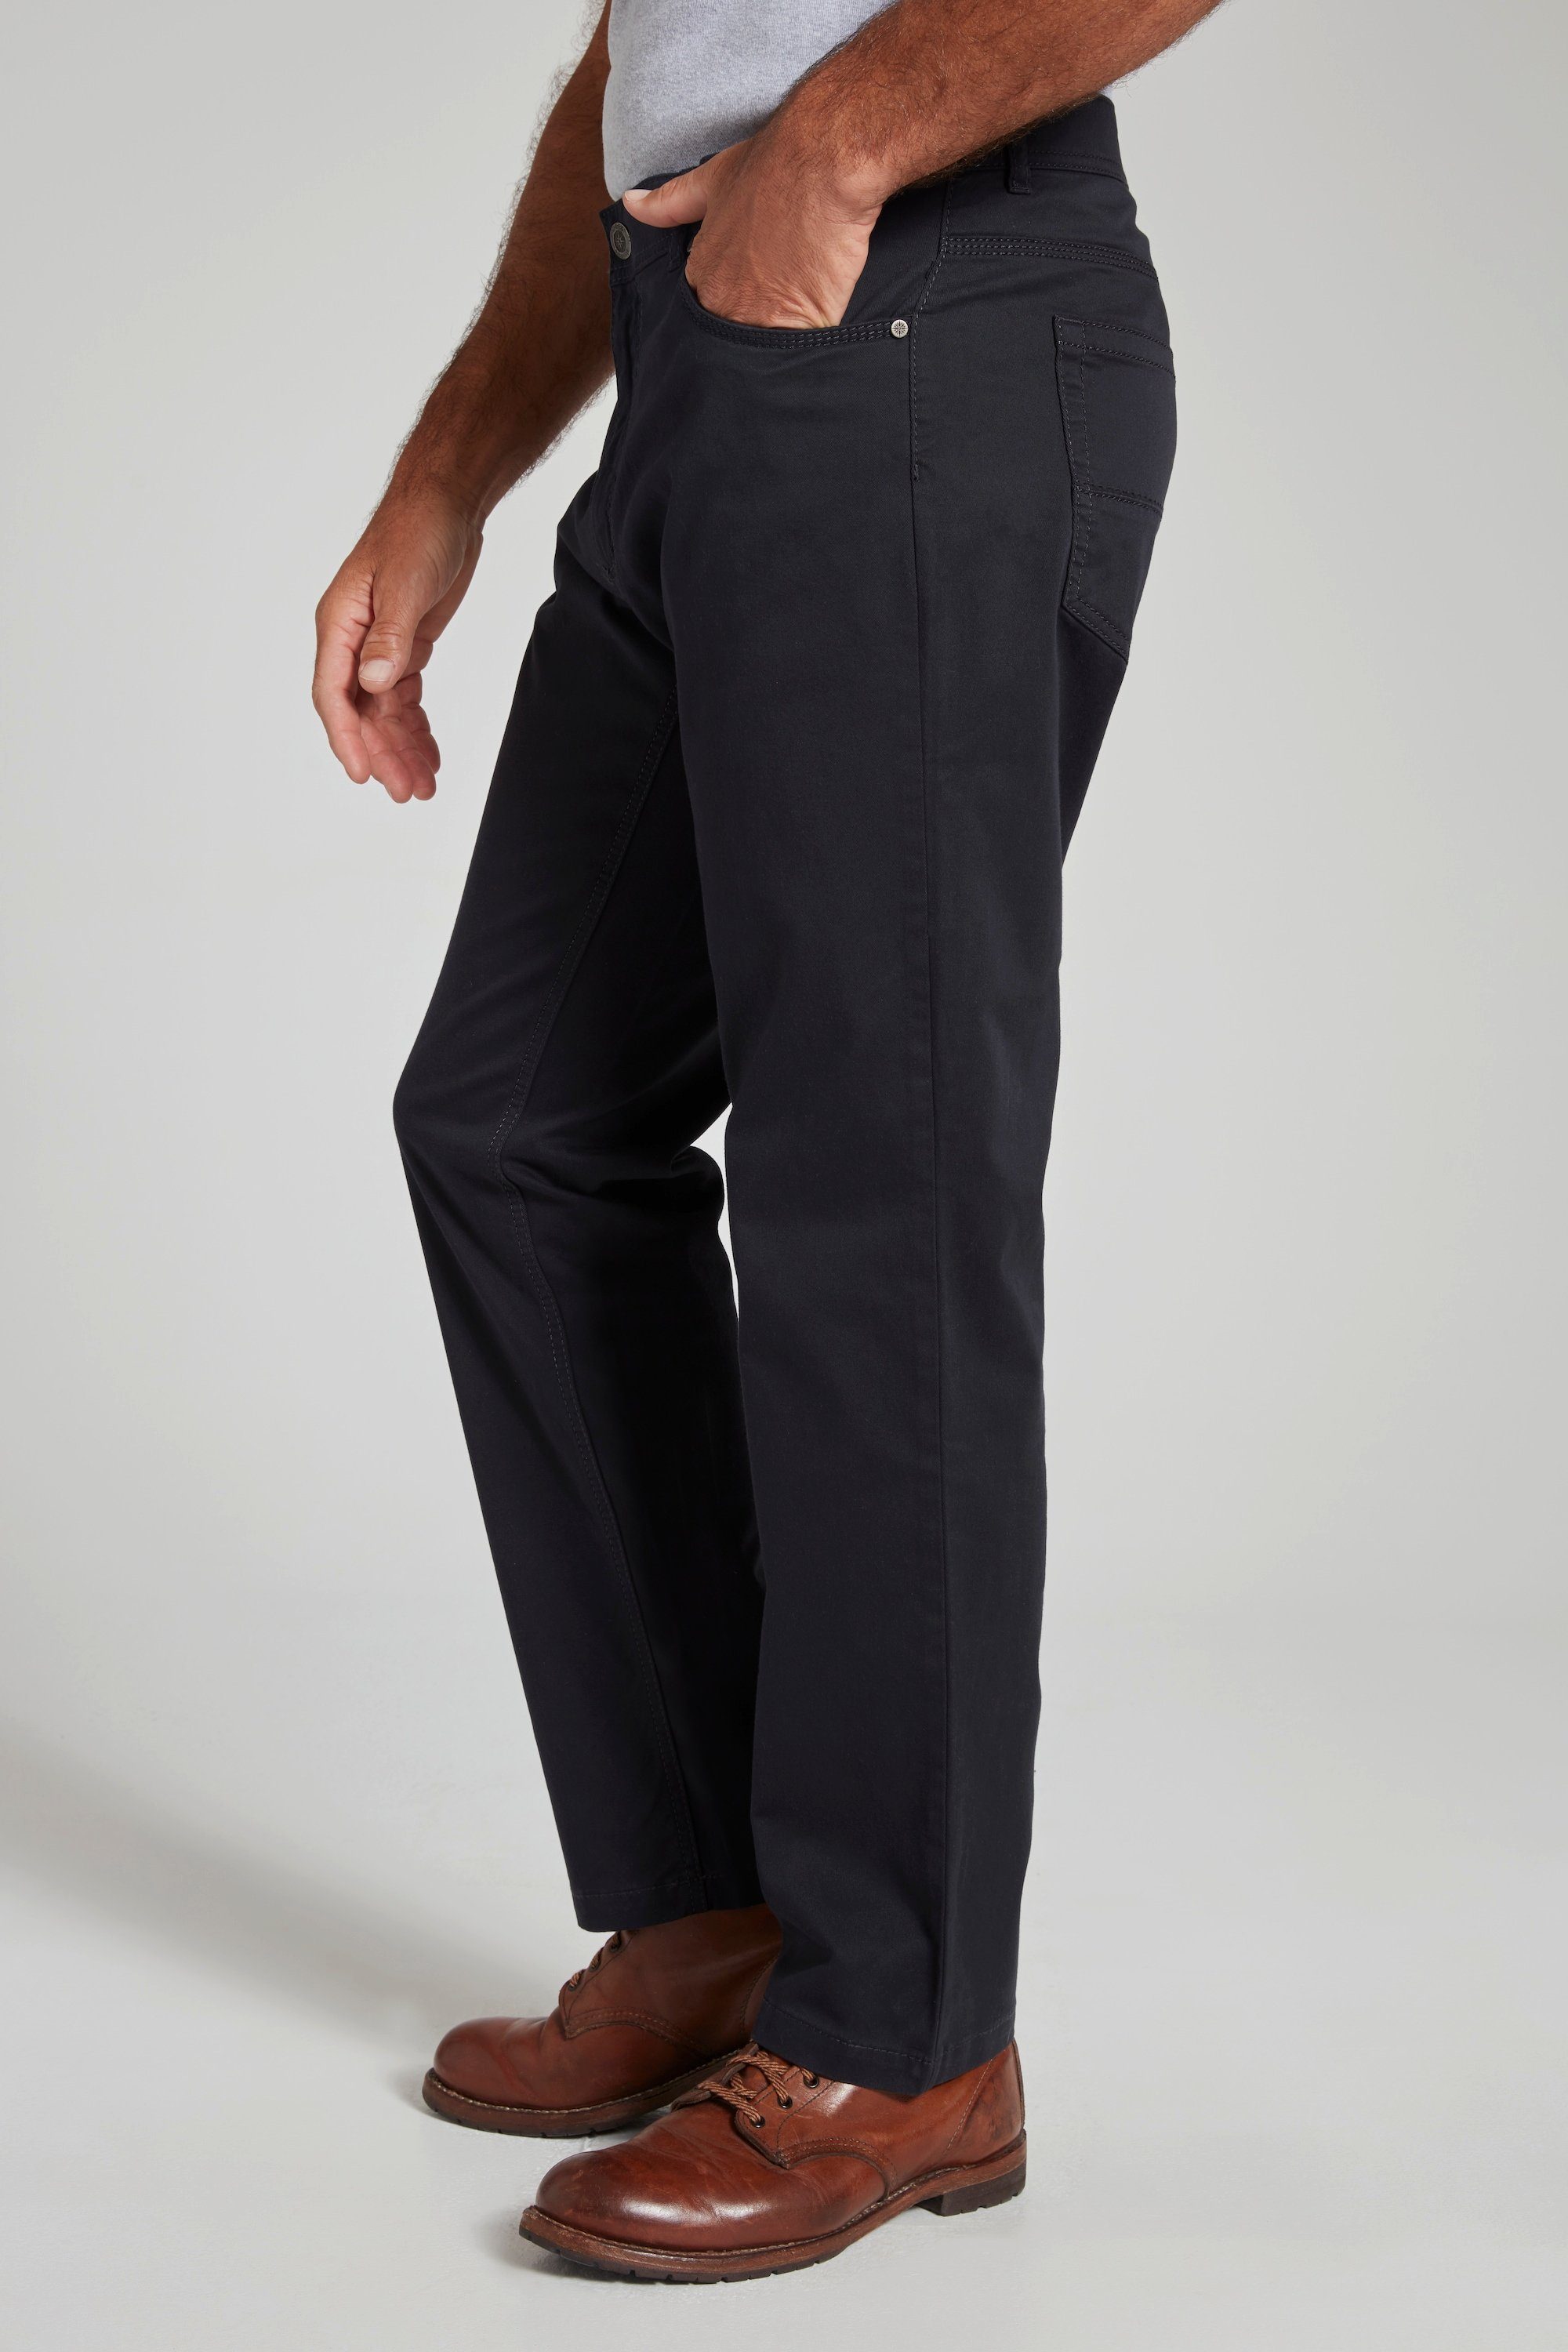 Hose 5-Pocket-Jeans 5-Pocket Regular elastischer Bund JP1880 dunkel Fit marine